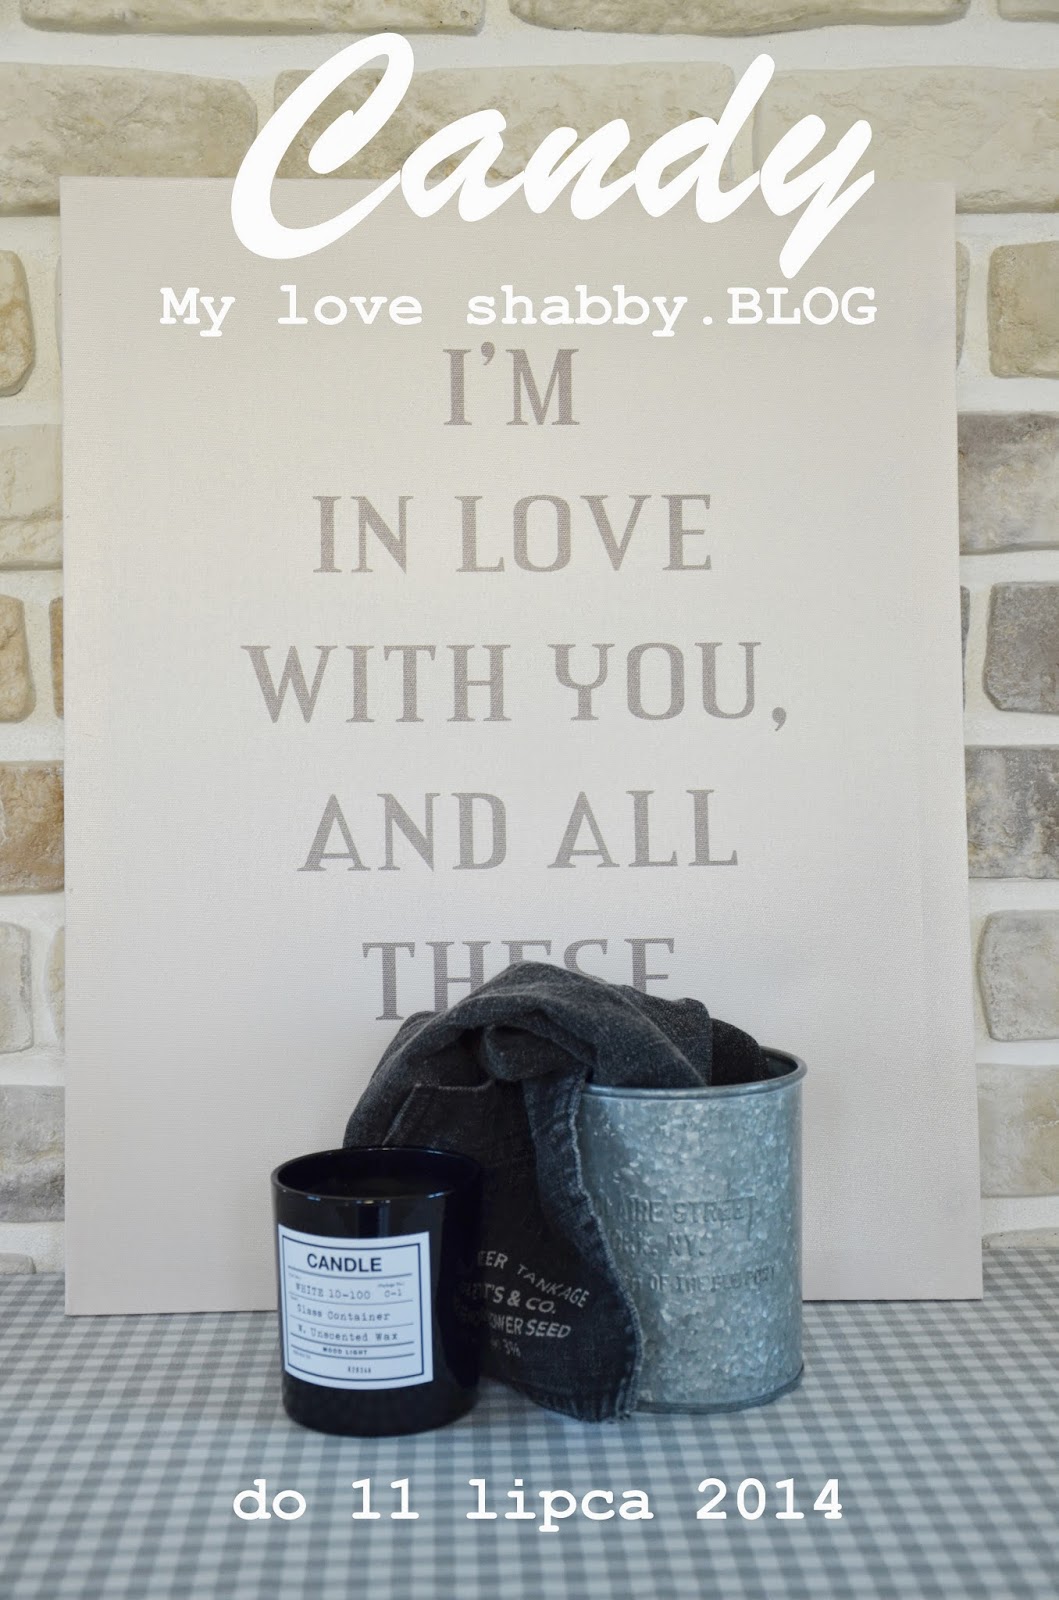 My love shabby.blog